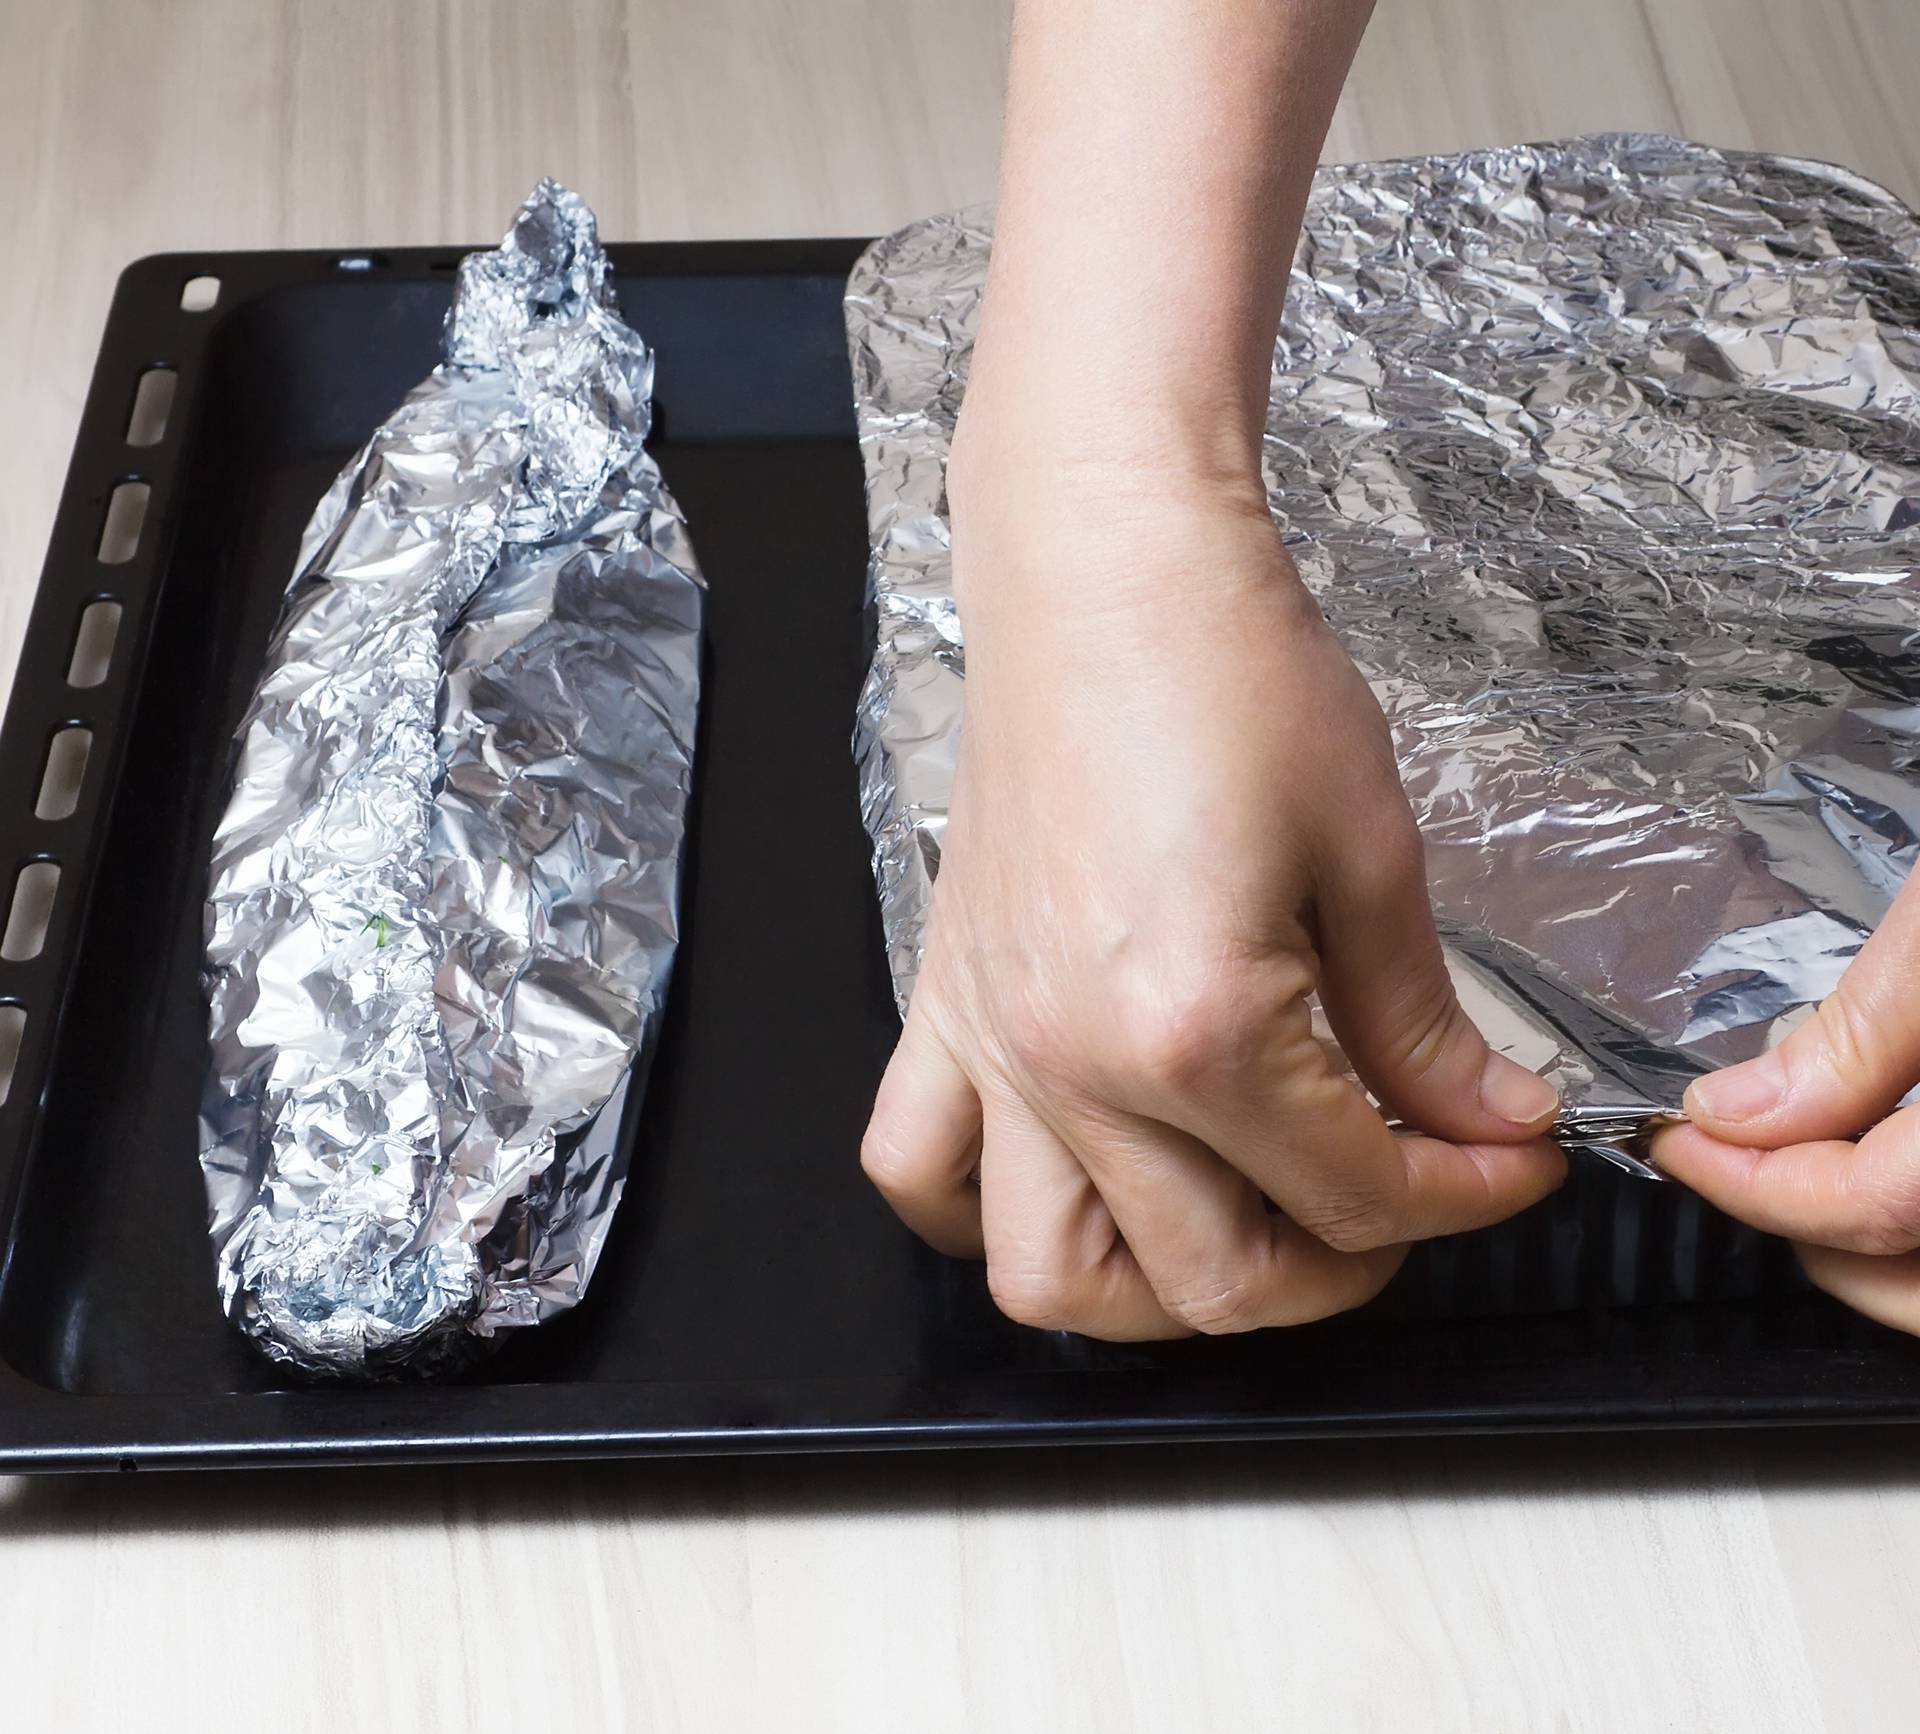 Koristite li aluminijsku foliju u kuhinji? Više nećete, opasna je